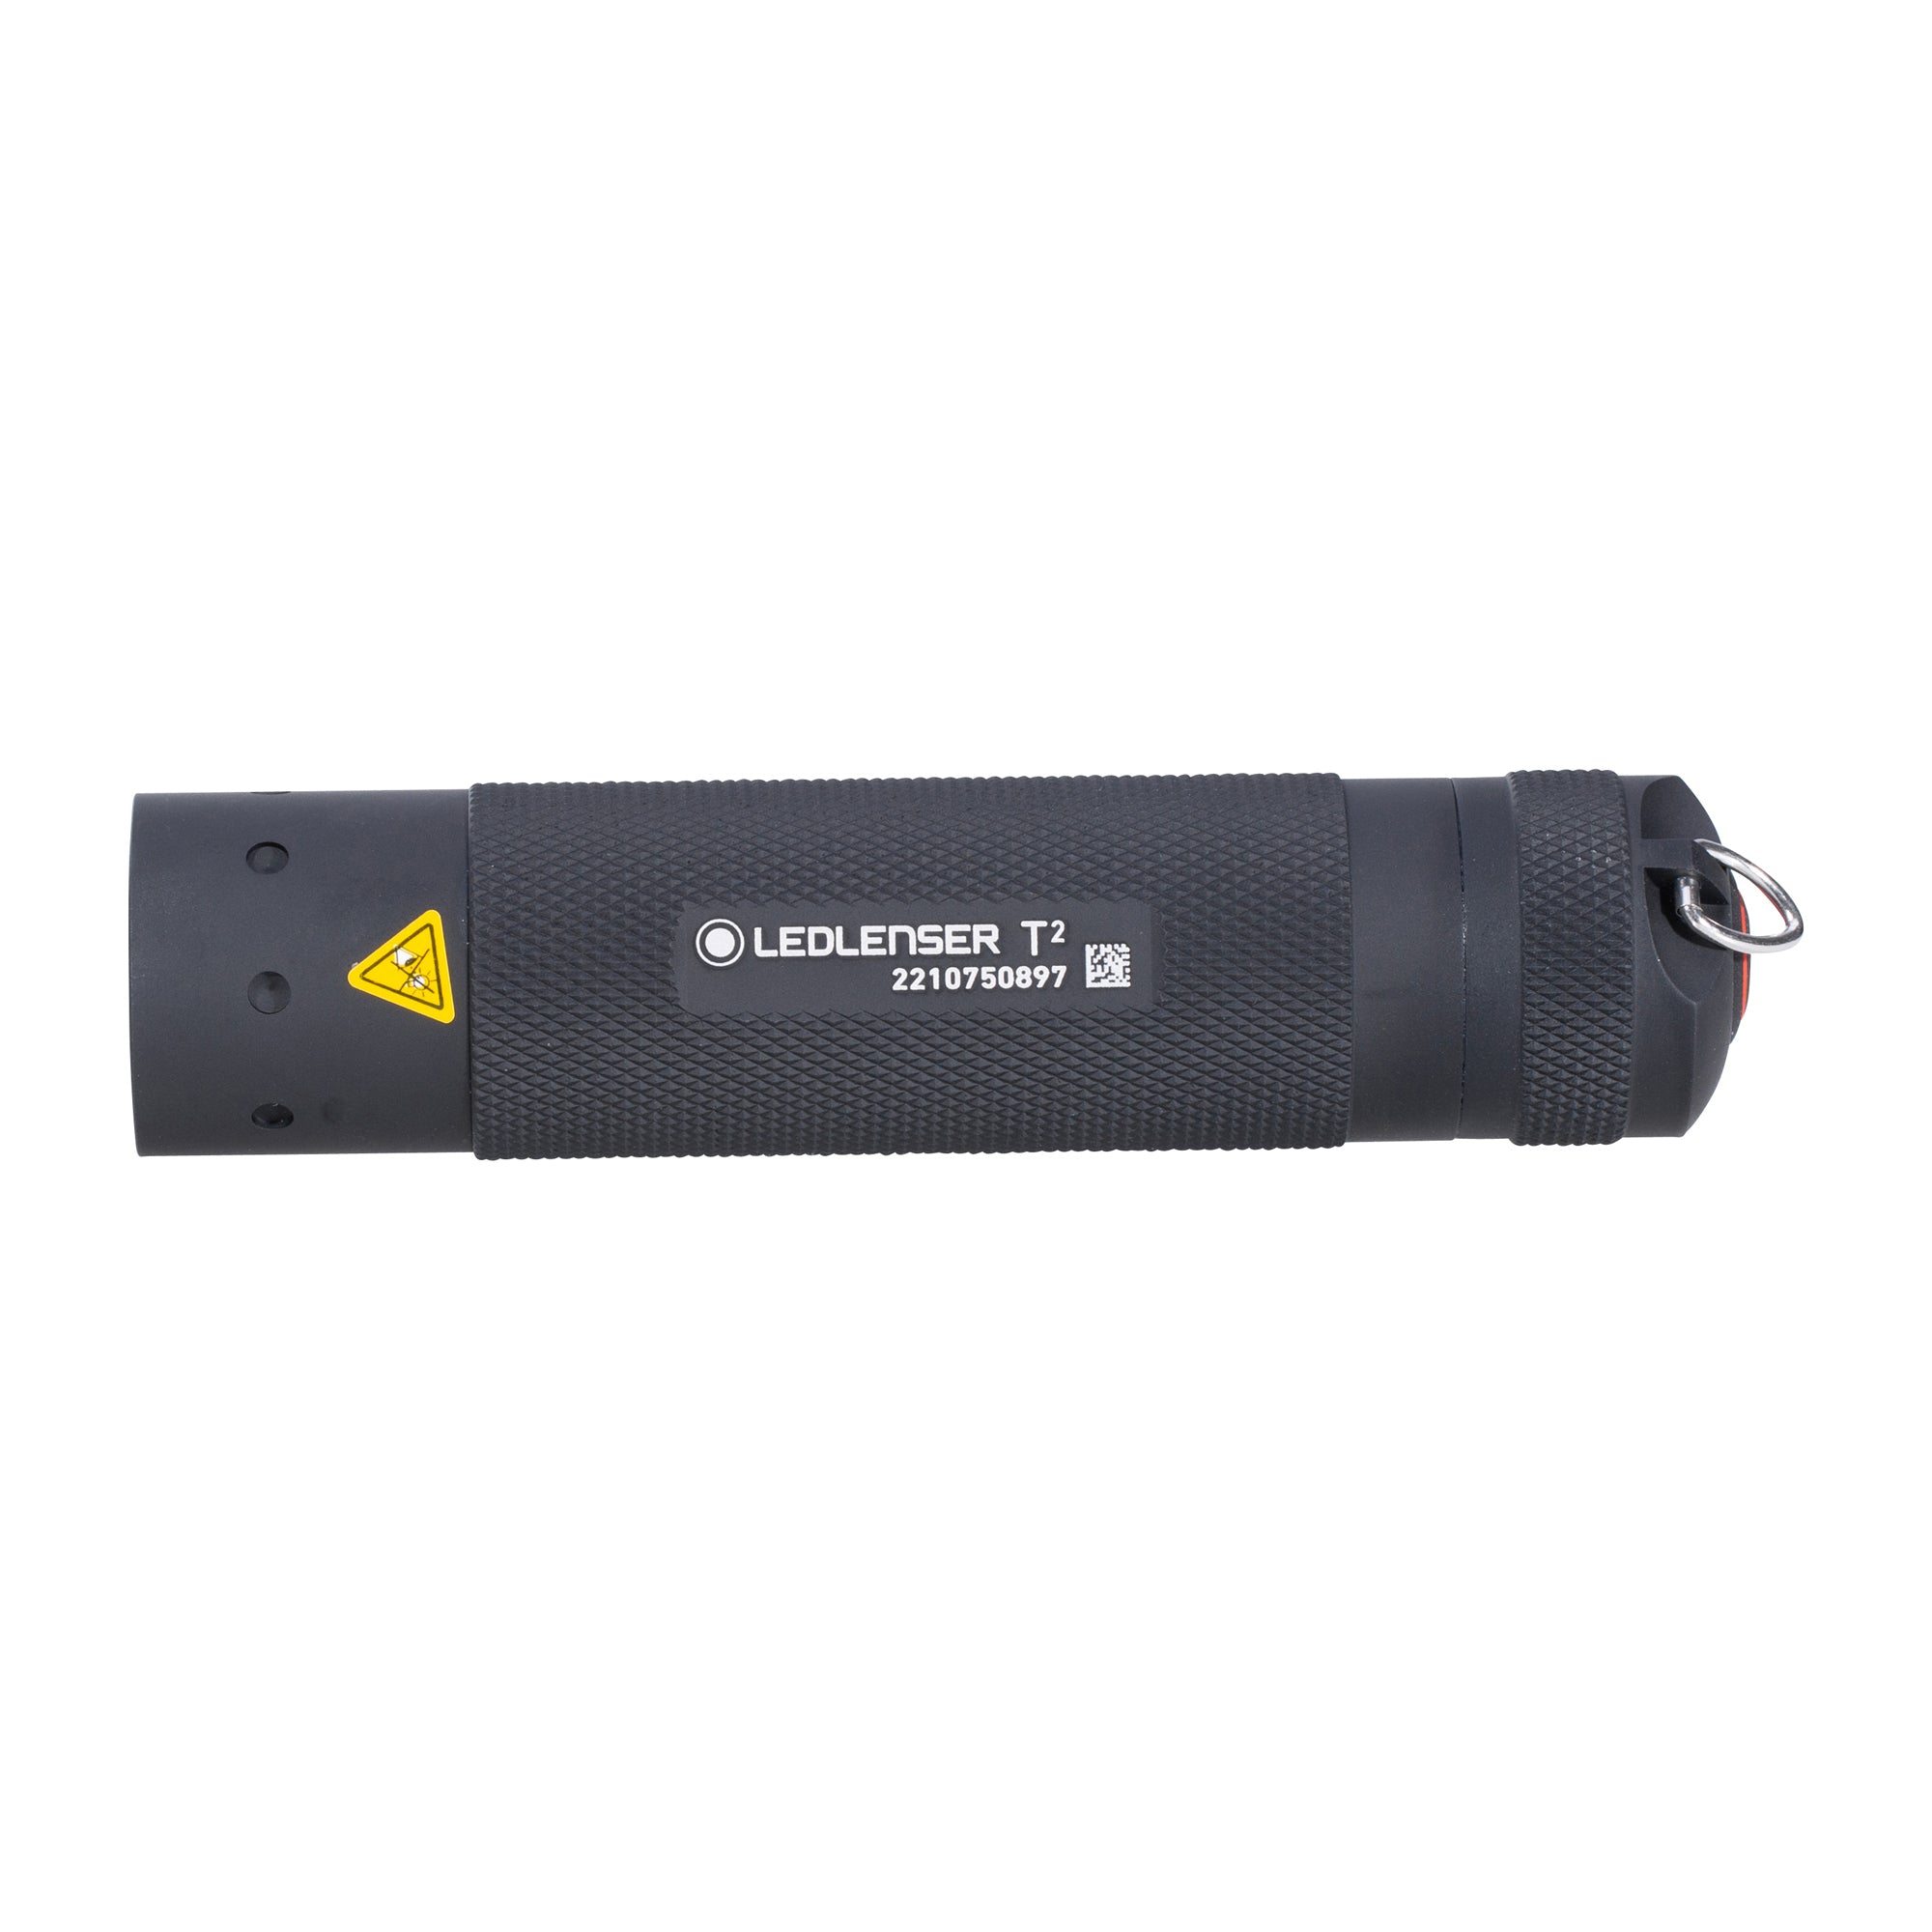 LED Lenser Taschenlampe T2 schwarz